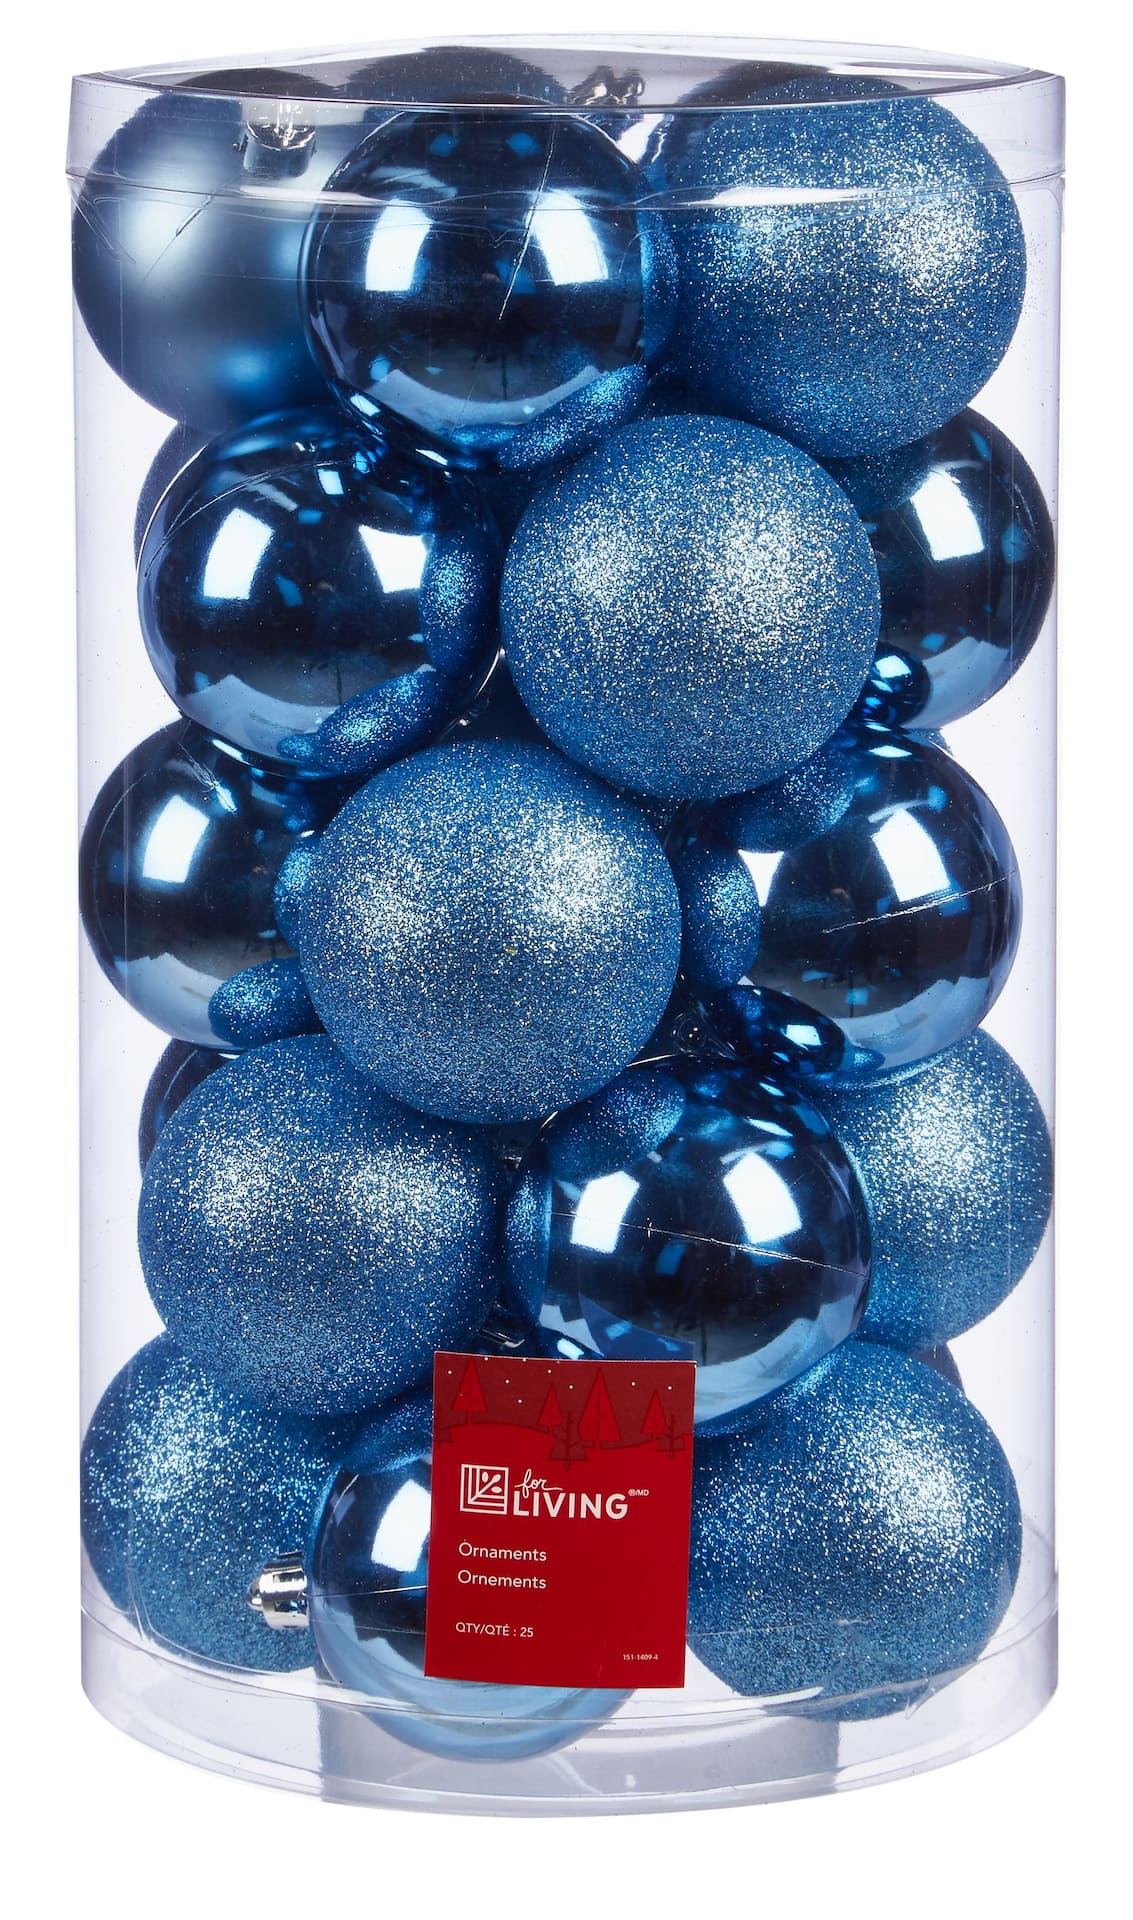 Boule de Noël bleue, blanche et noire n°1/4 (vendu)